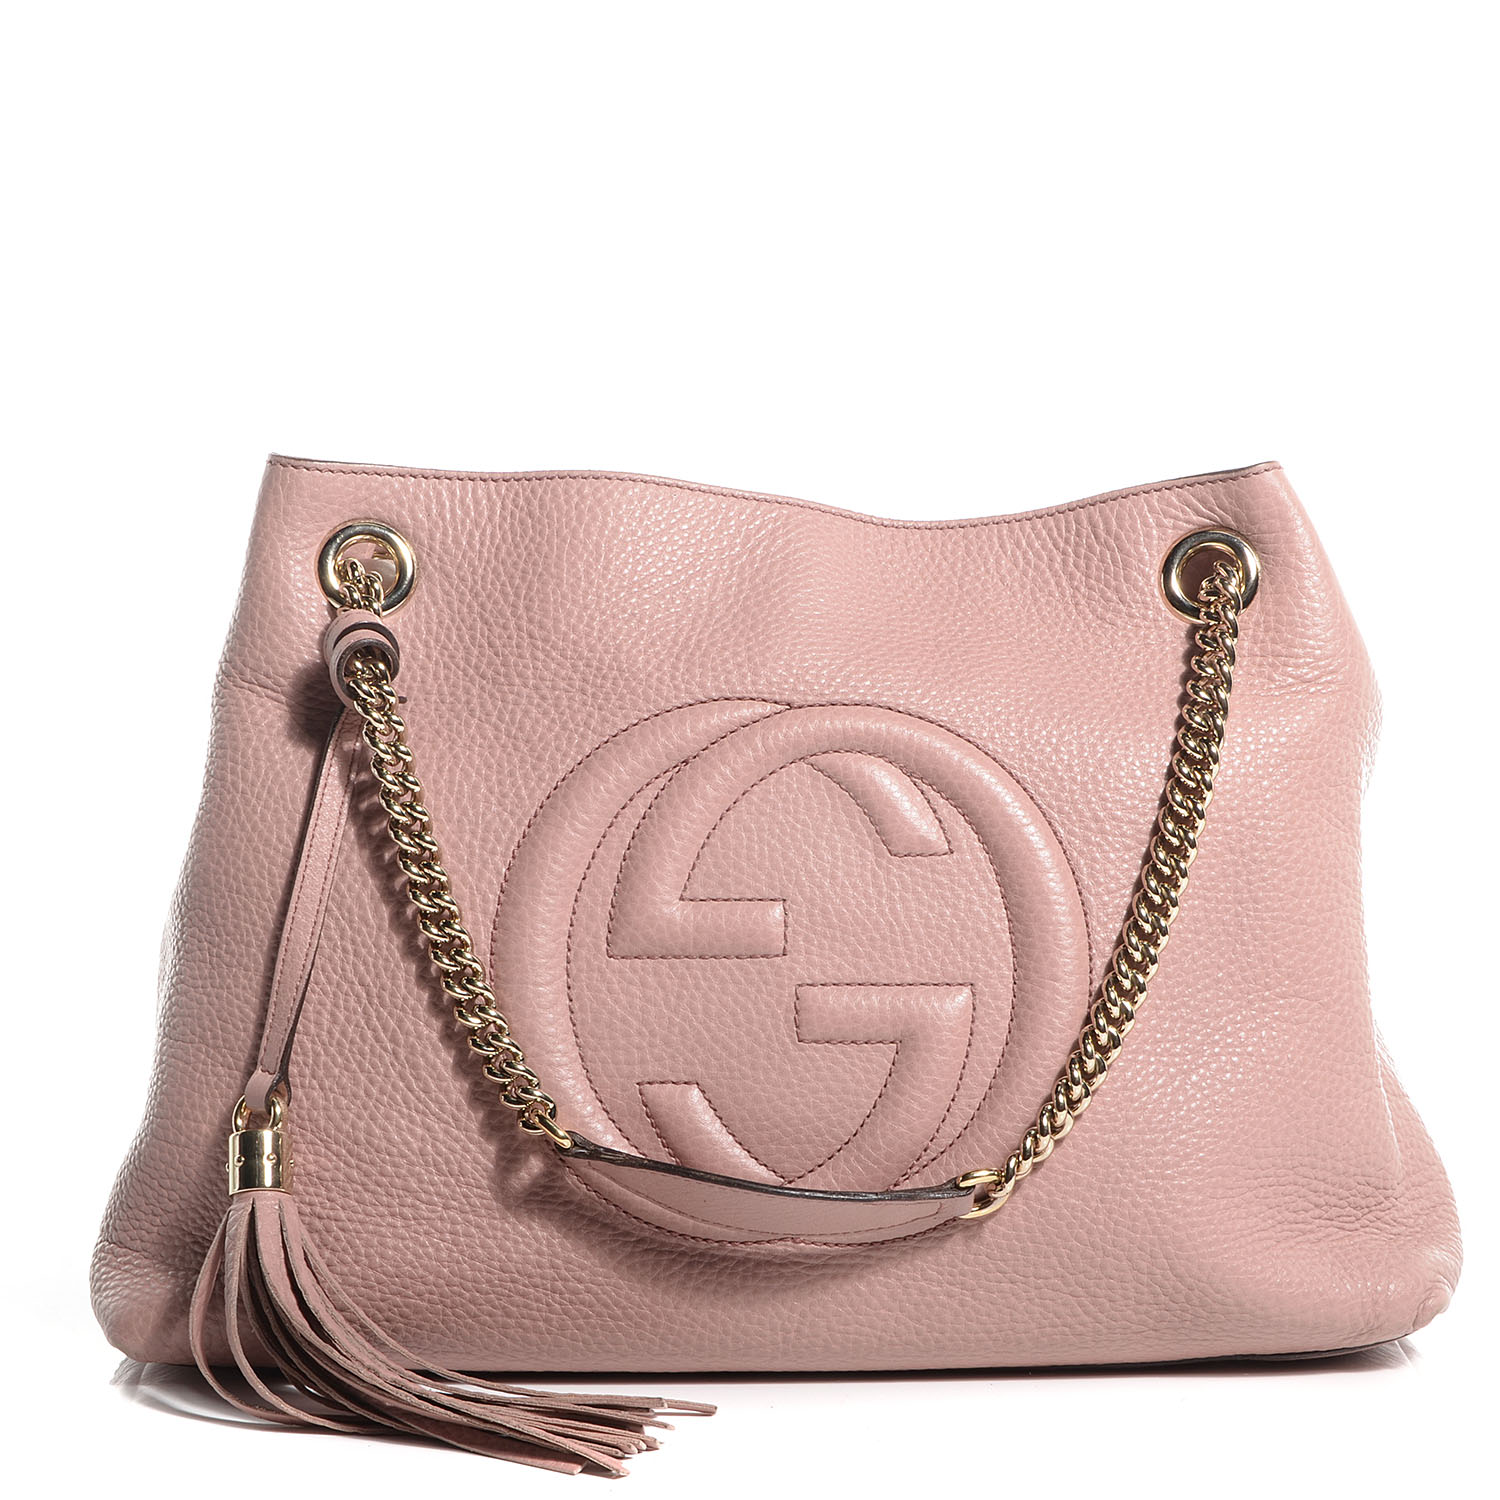 light pink gucci handbag